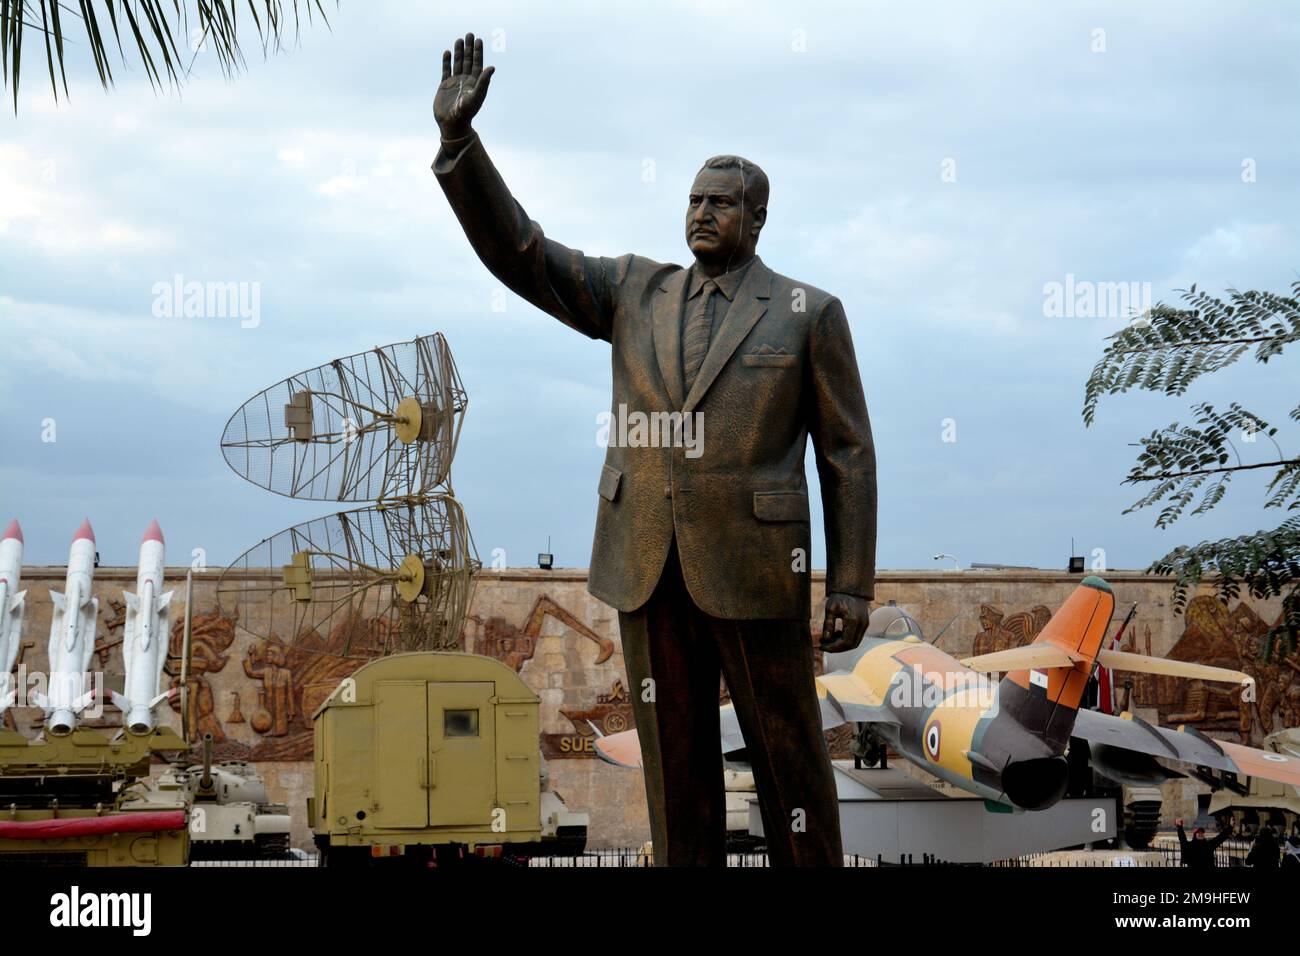 Cairo, Egypt, January 7 2023: Gamal Abdel Nasser statue, the second president of Egypt, Egyptian revolution leader, from the Egyptian national militar Stock Photo